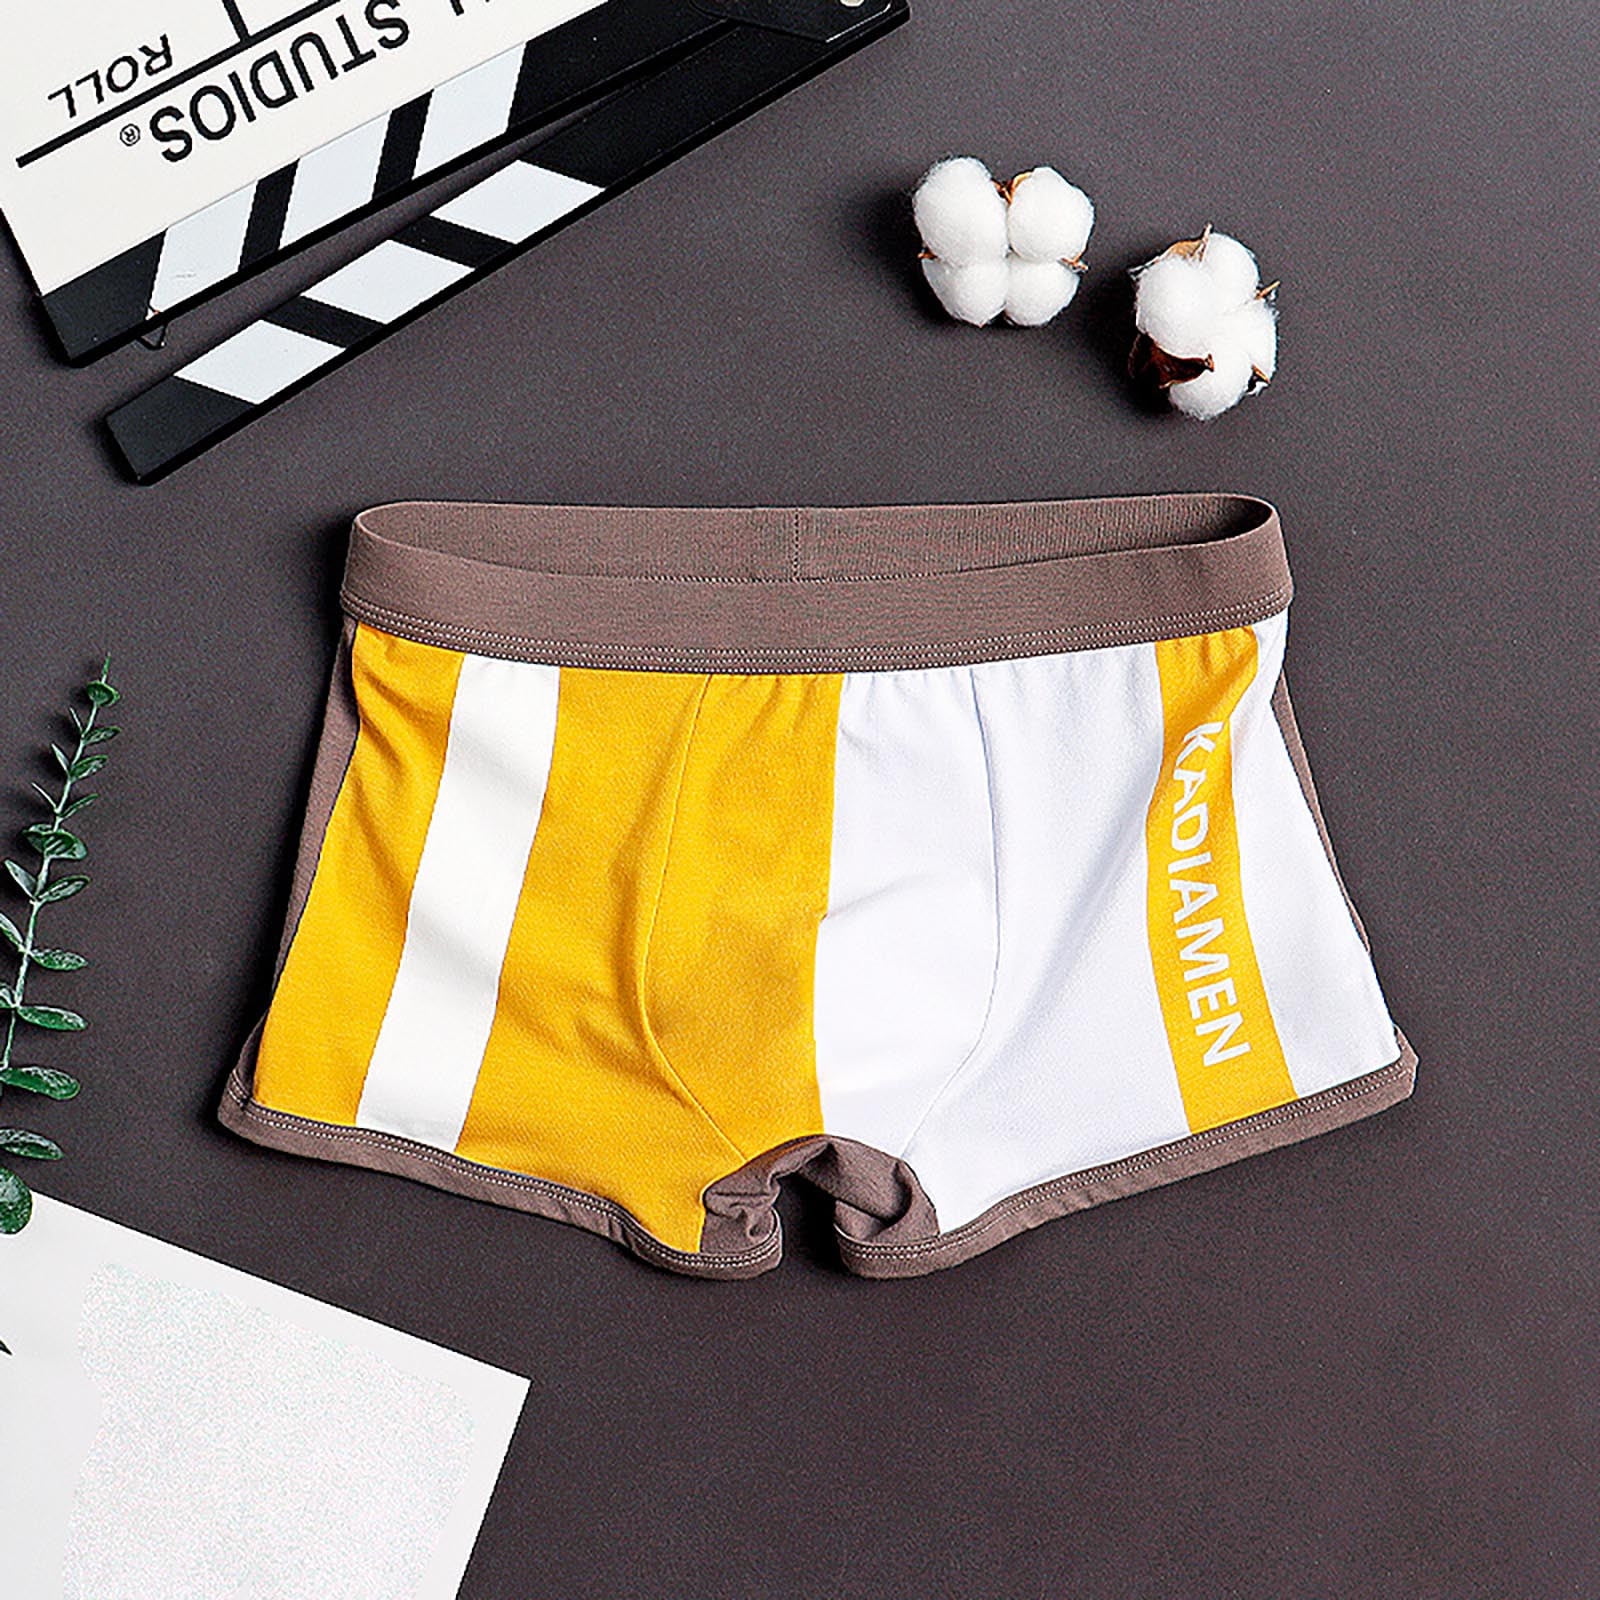 Vedolay Panties For Men Pack Mens Enhancing Briefs Underwear Big